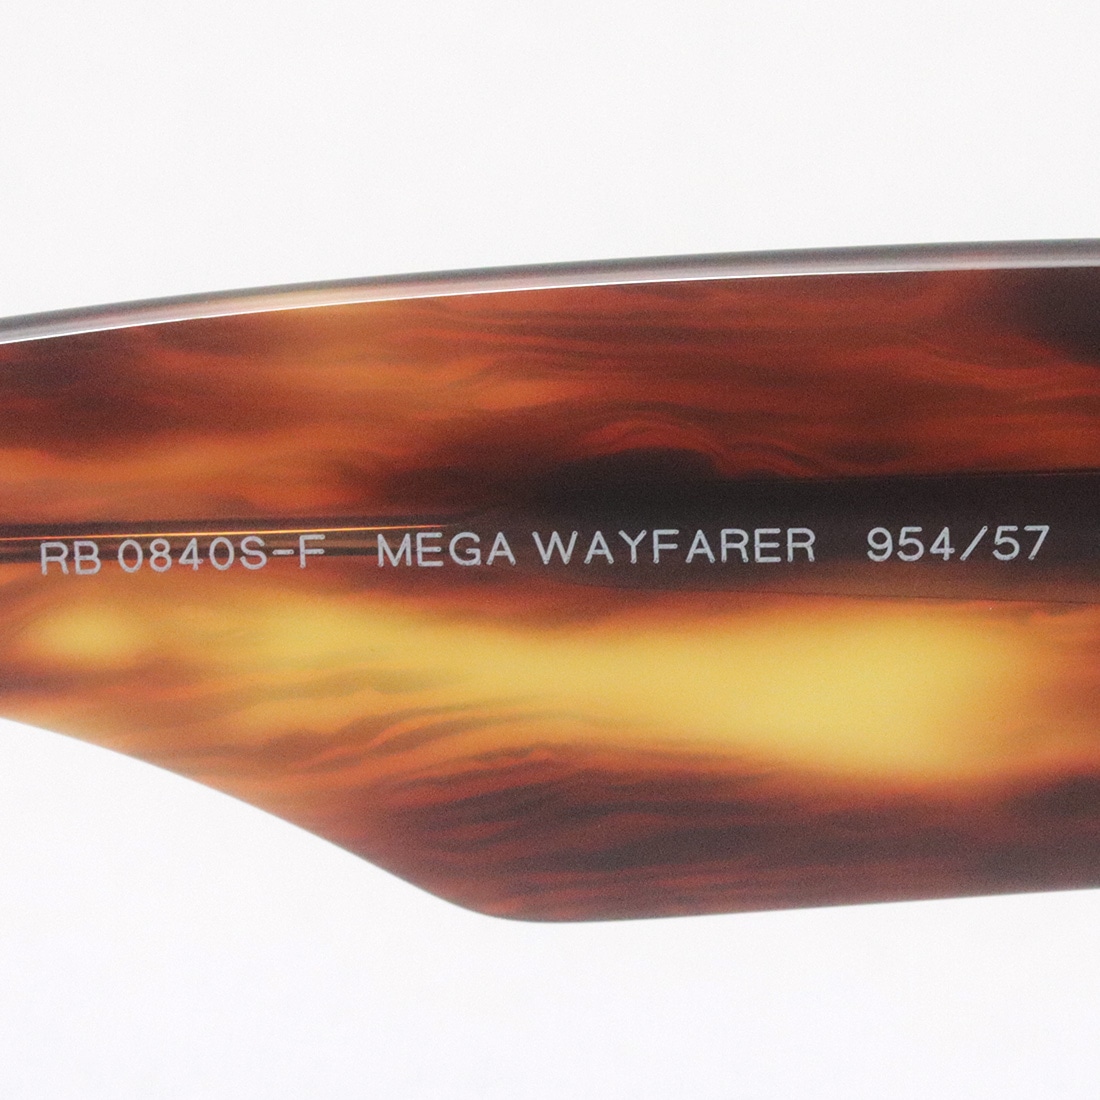 レイバン 偏光サングラス Ray-Ban RB0840SF 95457(52mm ハバナ): GLASS